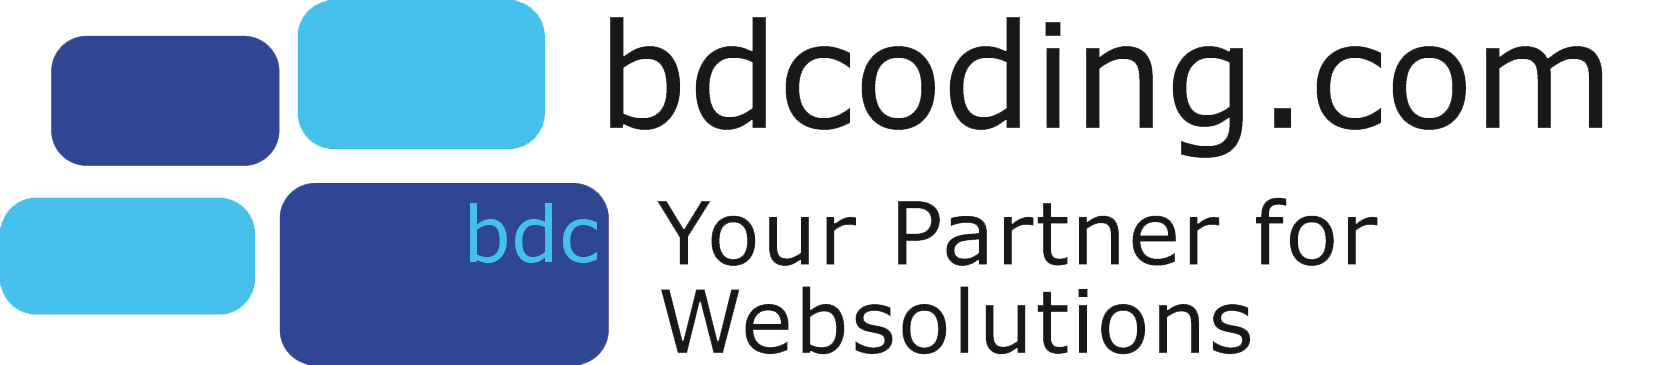 bdcoding.com - Ihr Partner für Weblösungen